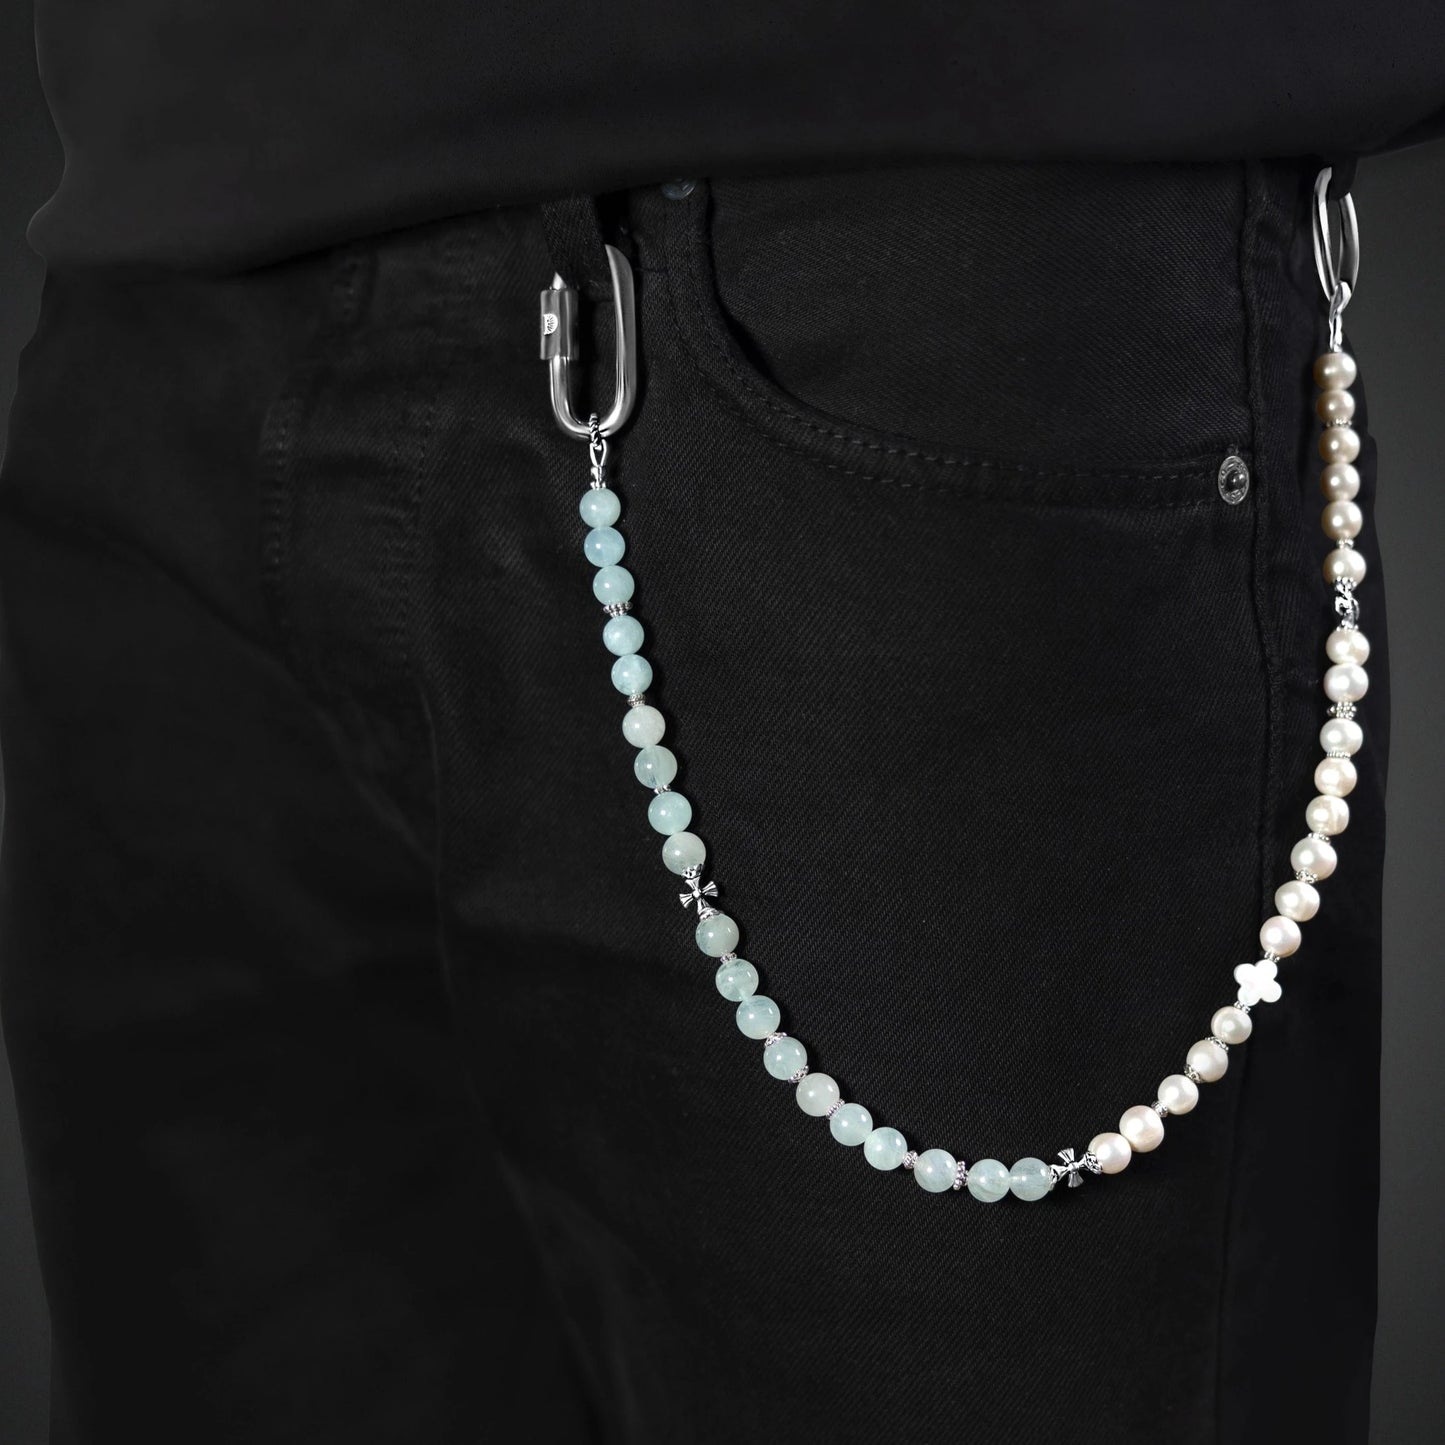 Chaîne de pantalon en perles pour homme et femme de luxe, perles naturelles de culture, perles d'eau douce, pierres fines et argent 925. Tendance et luxueux.